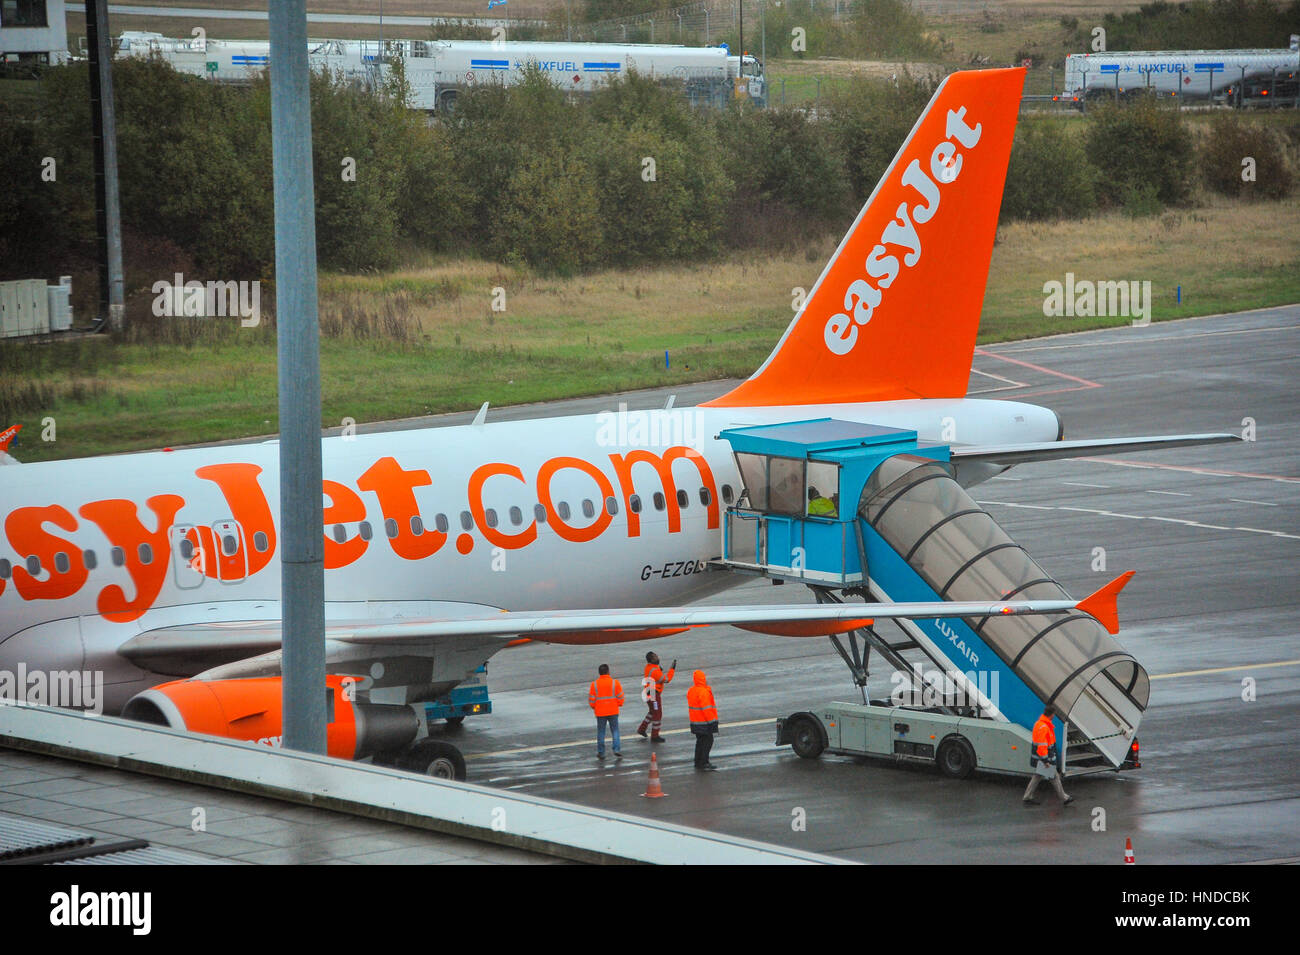 Luxemburg, Flughafen Findel, 29.10.2012 kommt eine EasyJet-Unternehmens-Ebene bei der LUXairport. Stockfoto